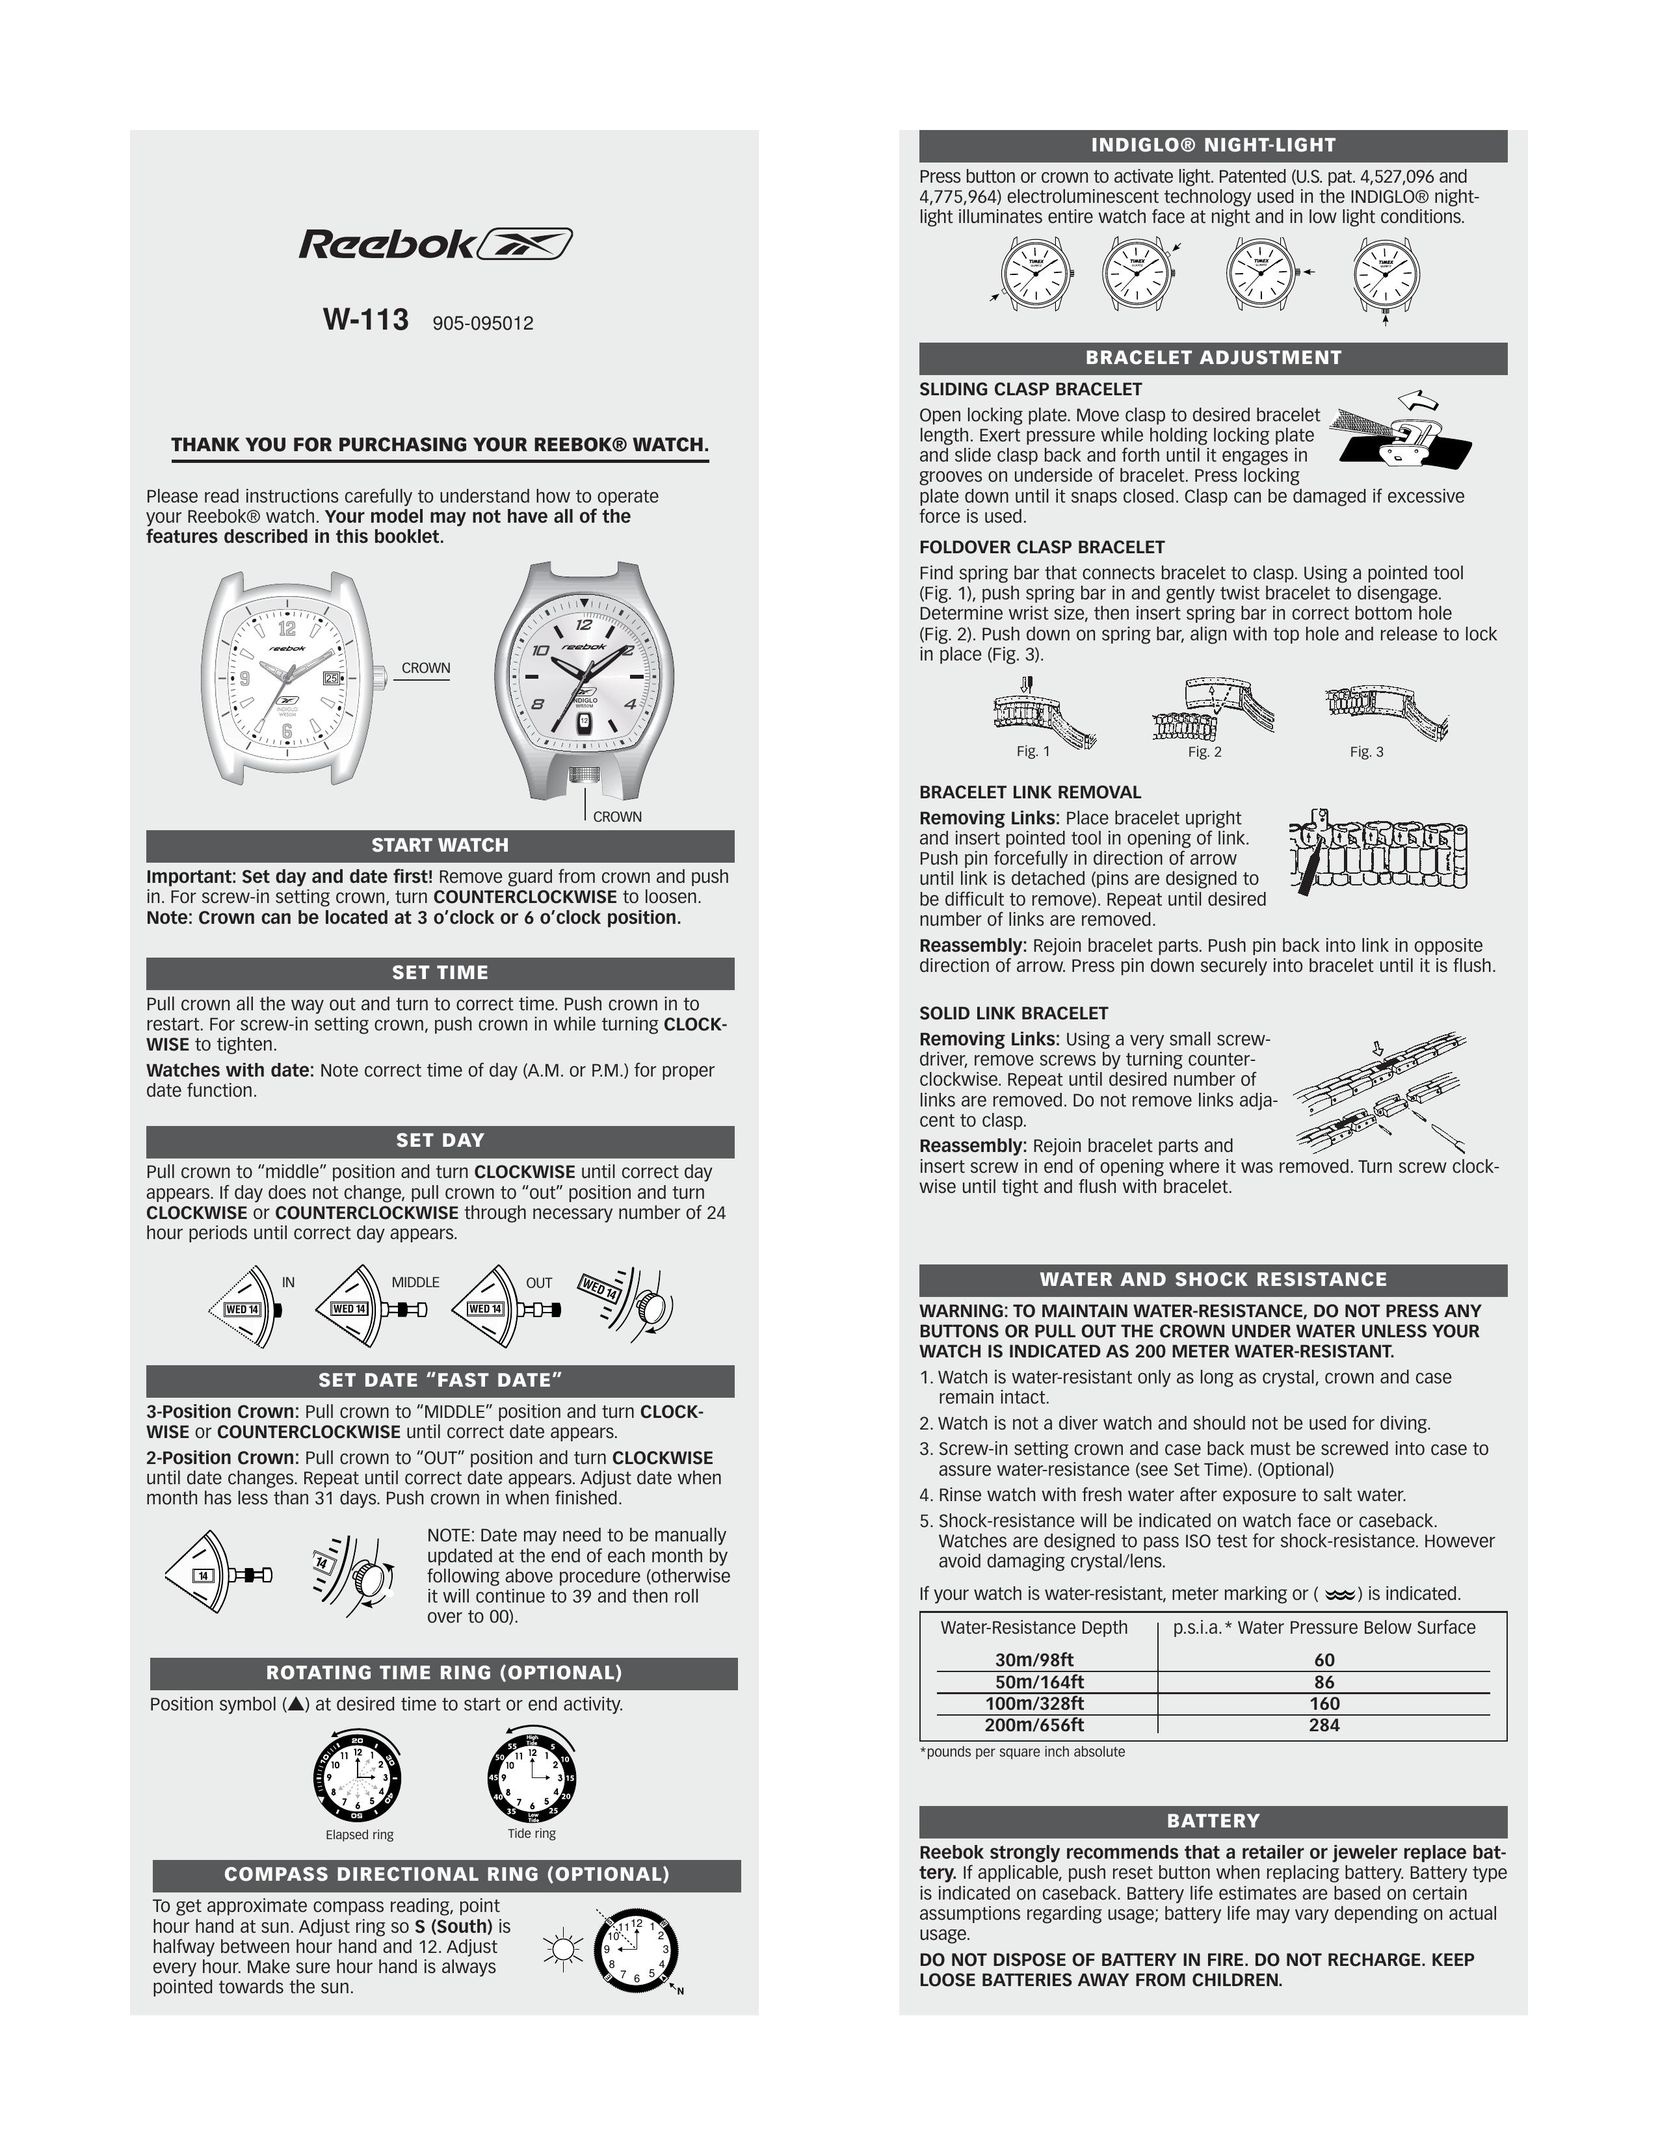 Reebok W-113 Watch User Manual